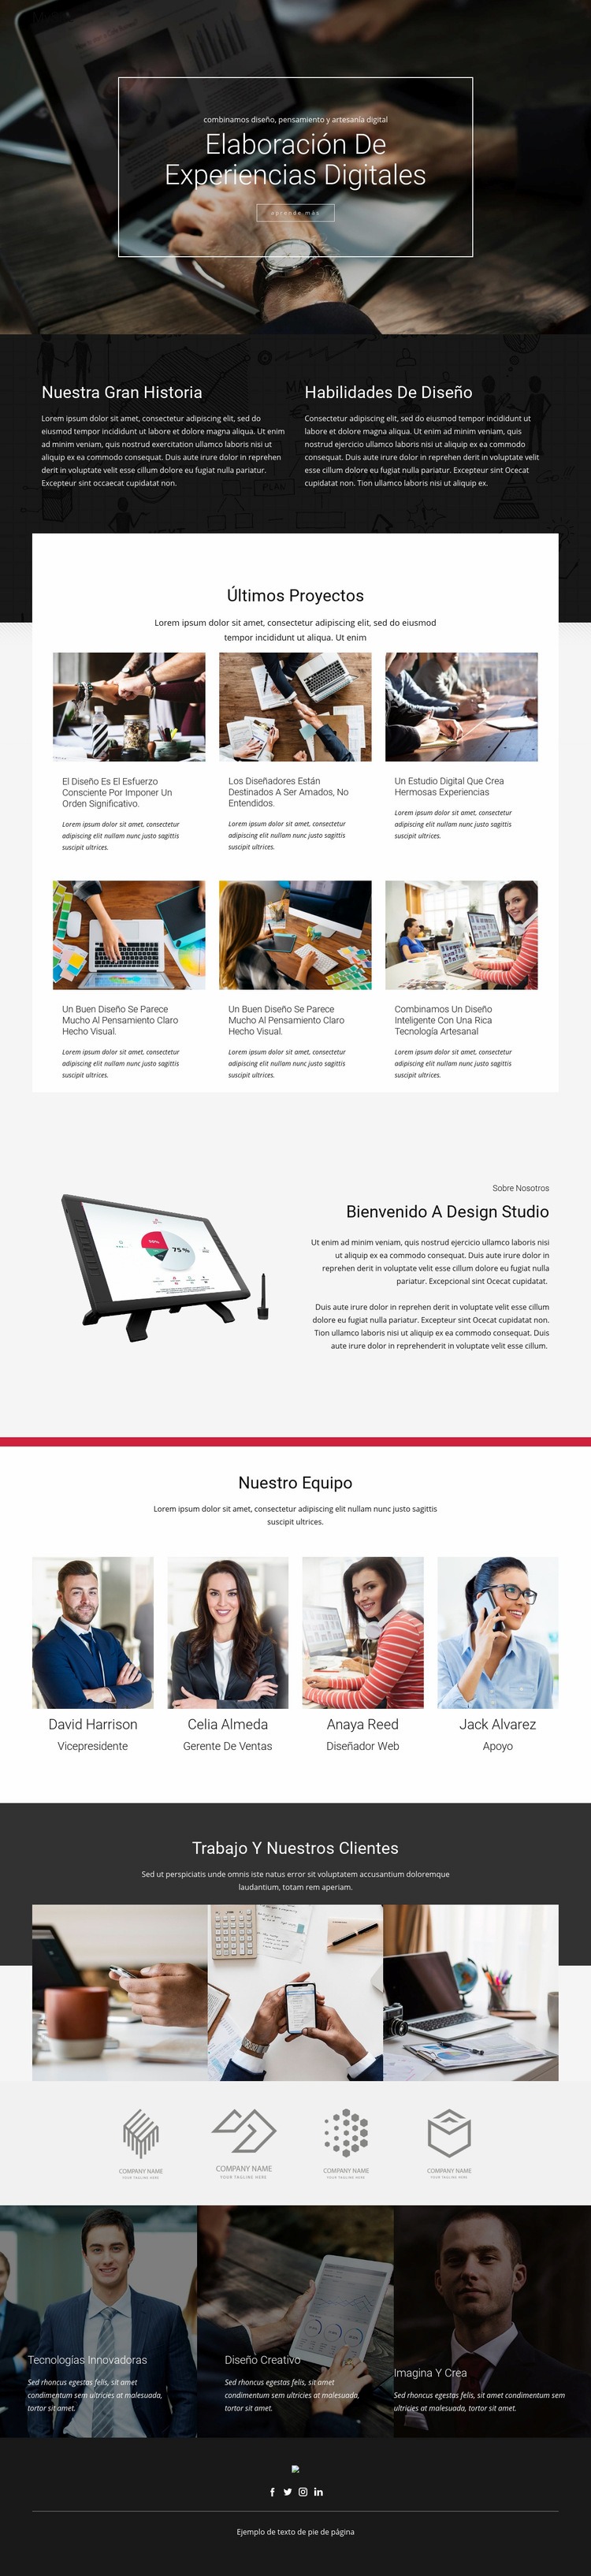 Estudio de elaboración de diseño digital Diseño de páginas web